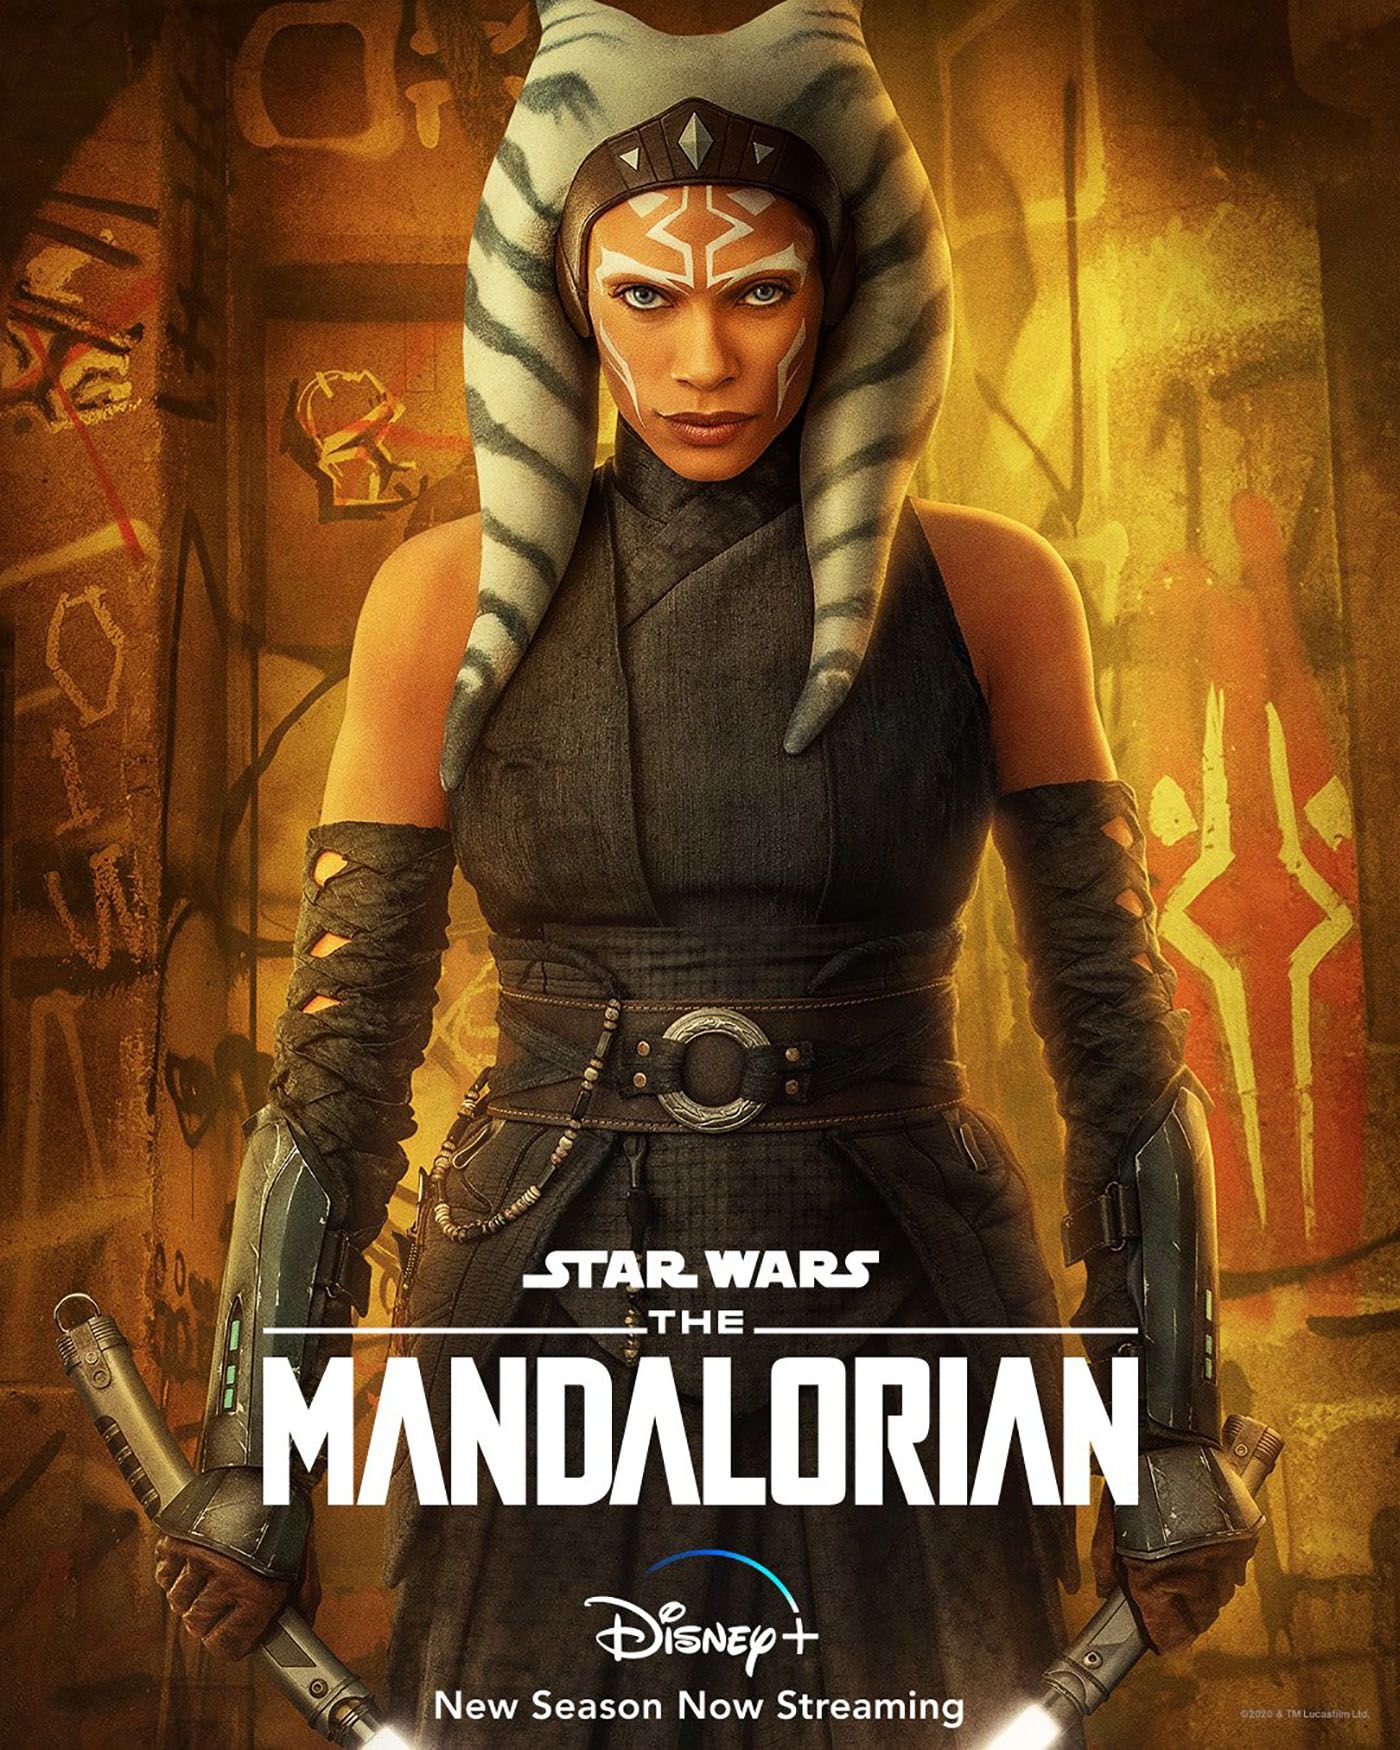 The Mandalorian: Ahsoka Tano Gets Her Own Poster